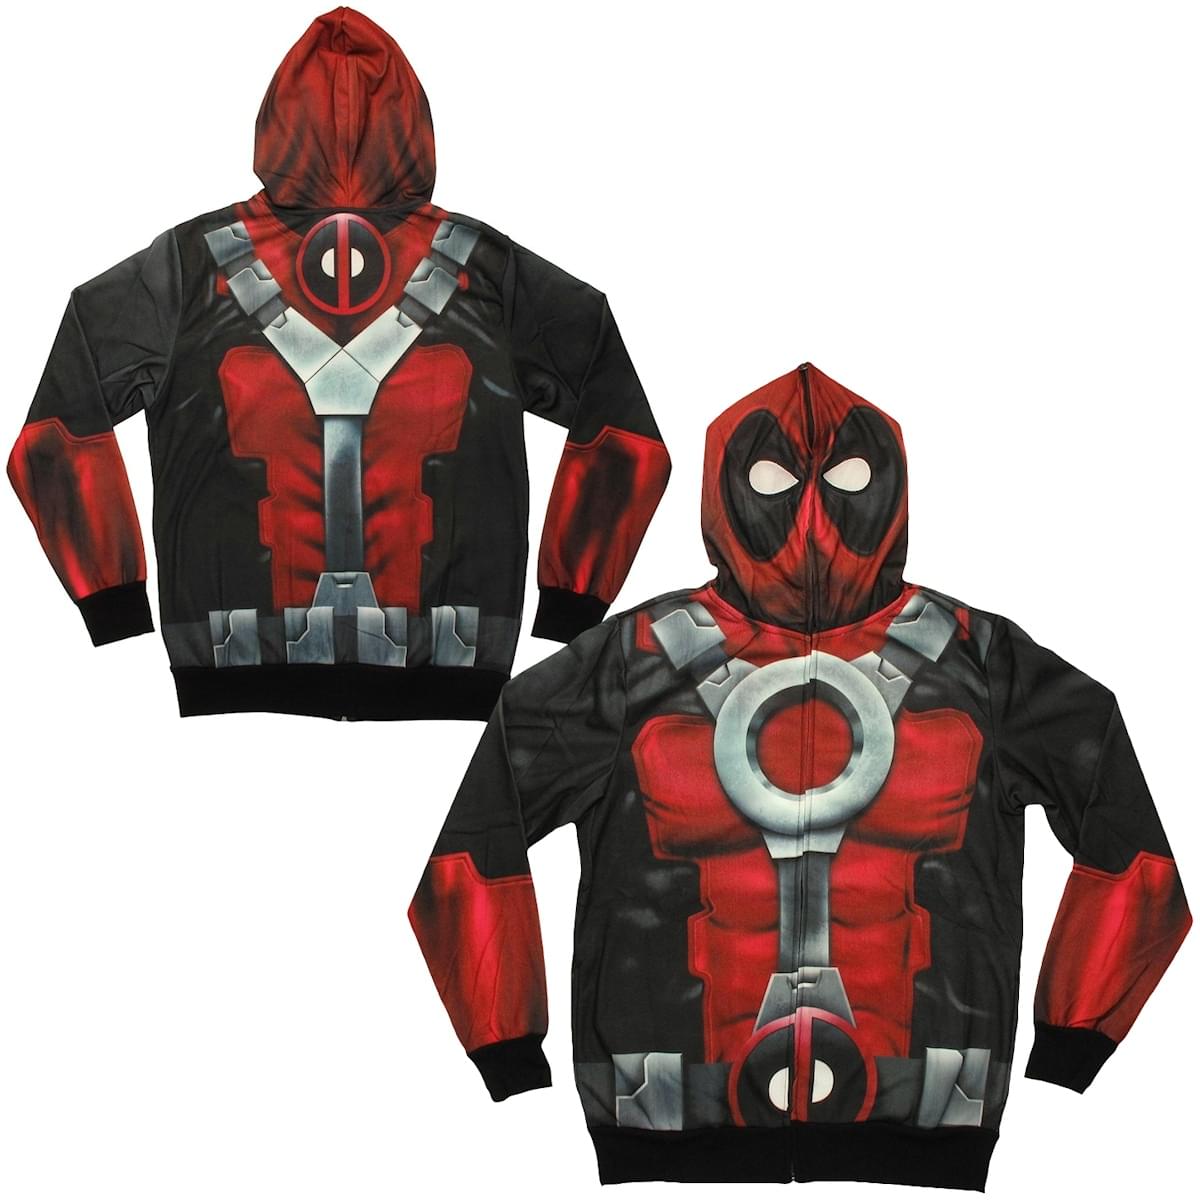 Marvel's Deadpool Sublimated Costume Hoodie